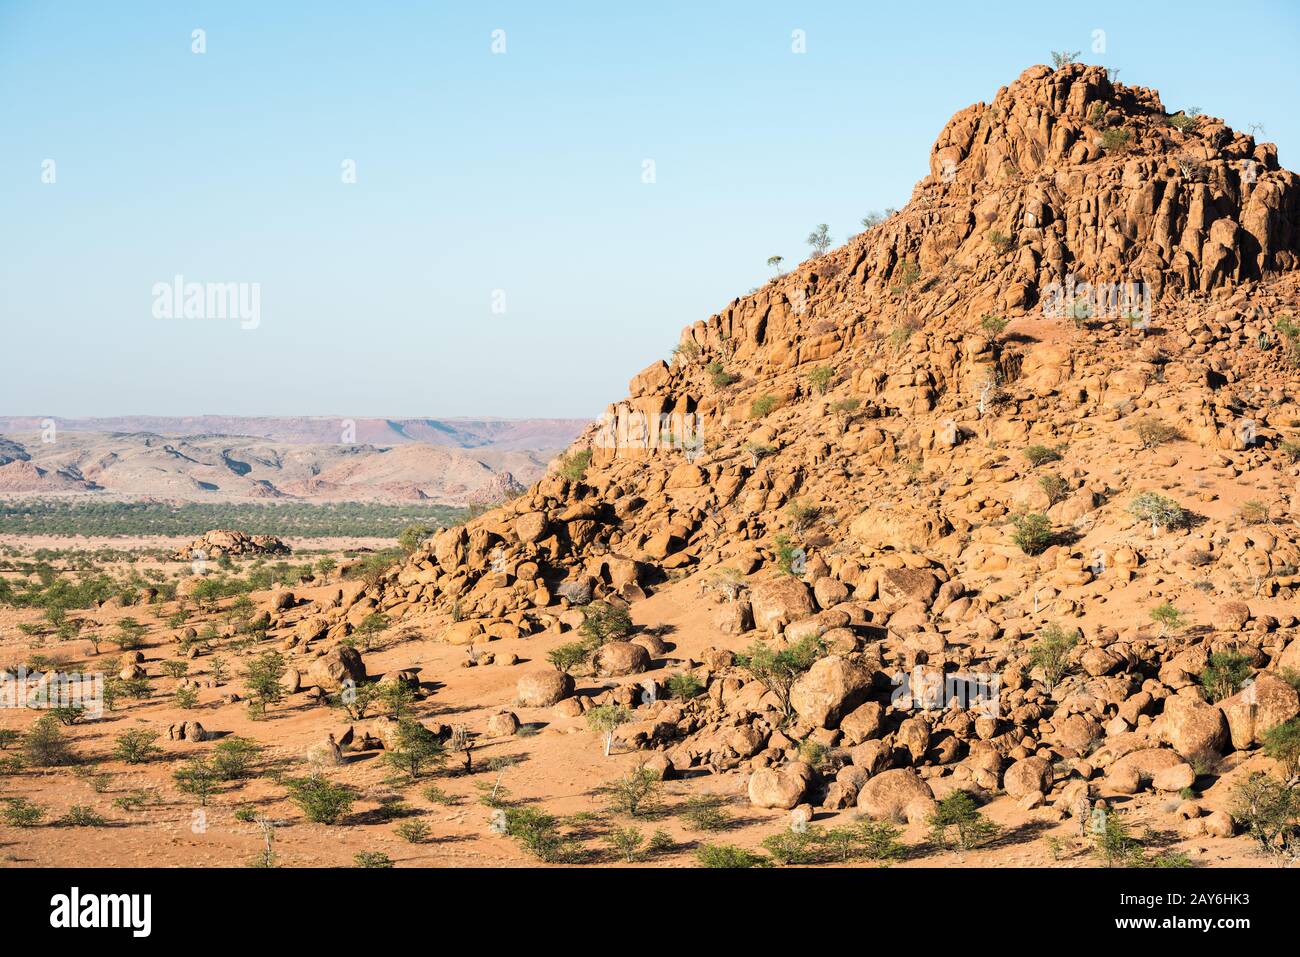 Felsige Landschaft von Namibia mit riesigen Felsbrocken und grünen Bäumen Stockfoto